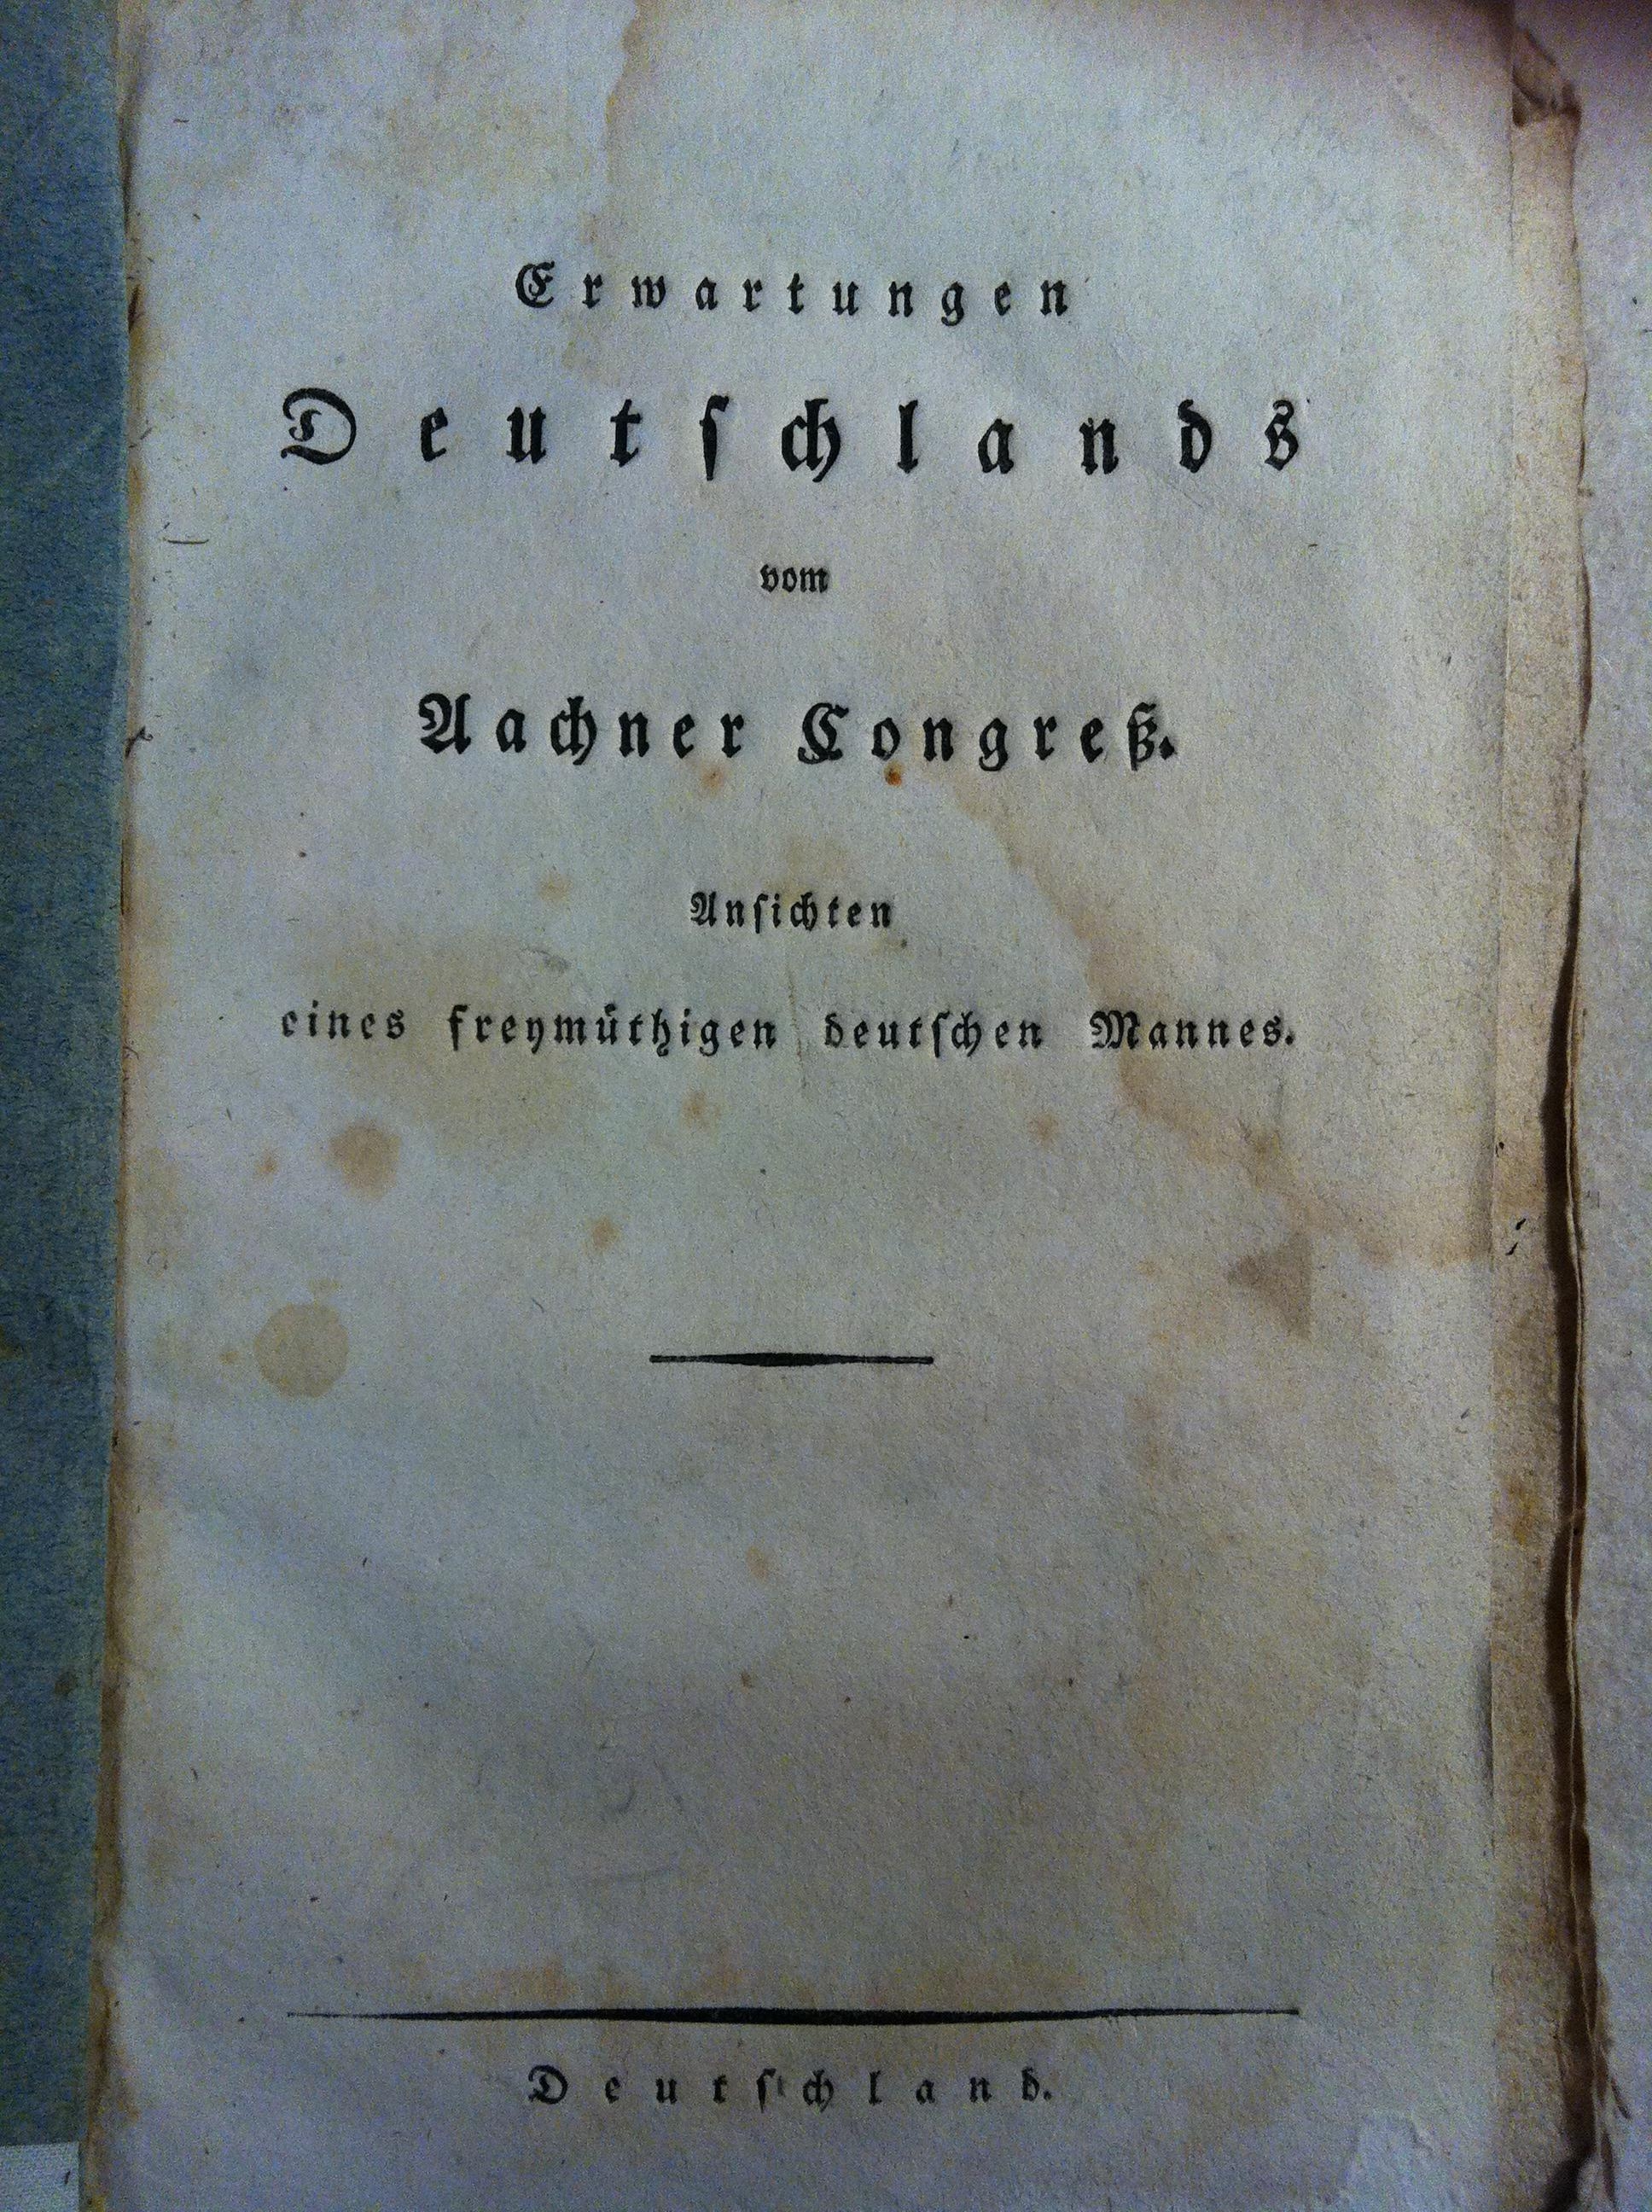 [Broschüre mit den Erwartungen an den Aachener Kongress 1818 und einer Karte, die die erwartete zukünftige Aufteilung Deutschlands zeigt]